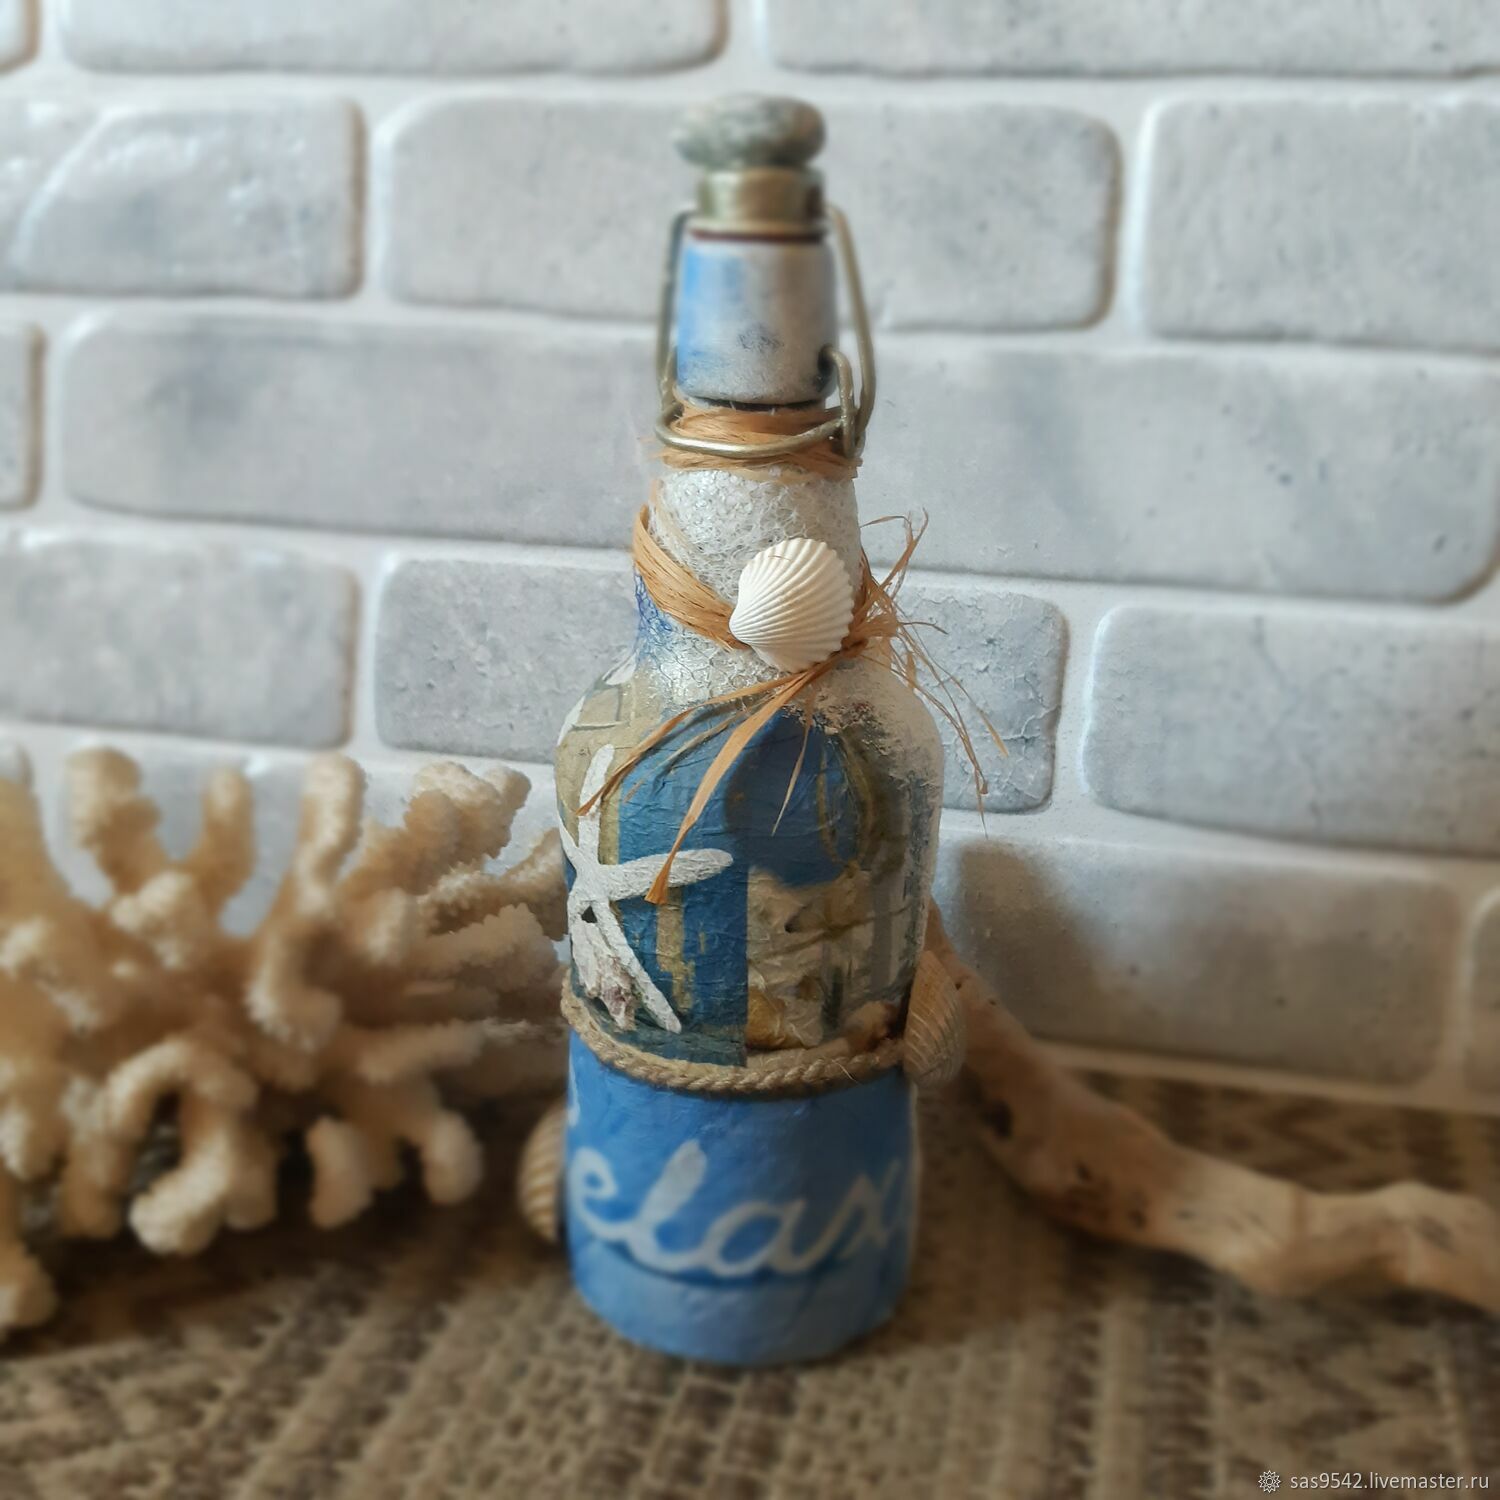 Купить бутылки саратов. Морской декор бутылок. Бутылка в морском стиле. Подарочная бутылка моряку. Декоративная бутылка Сокол.